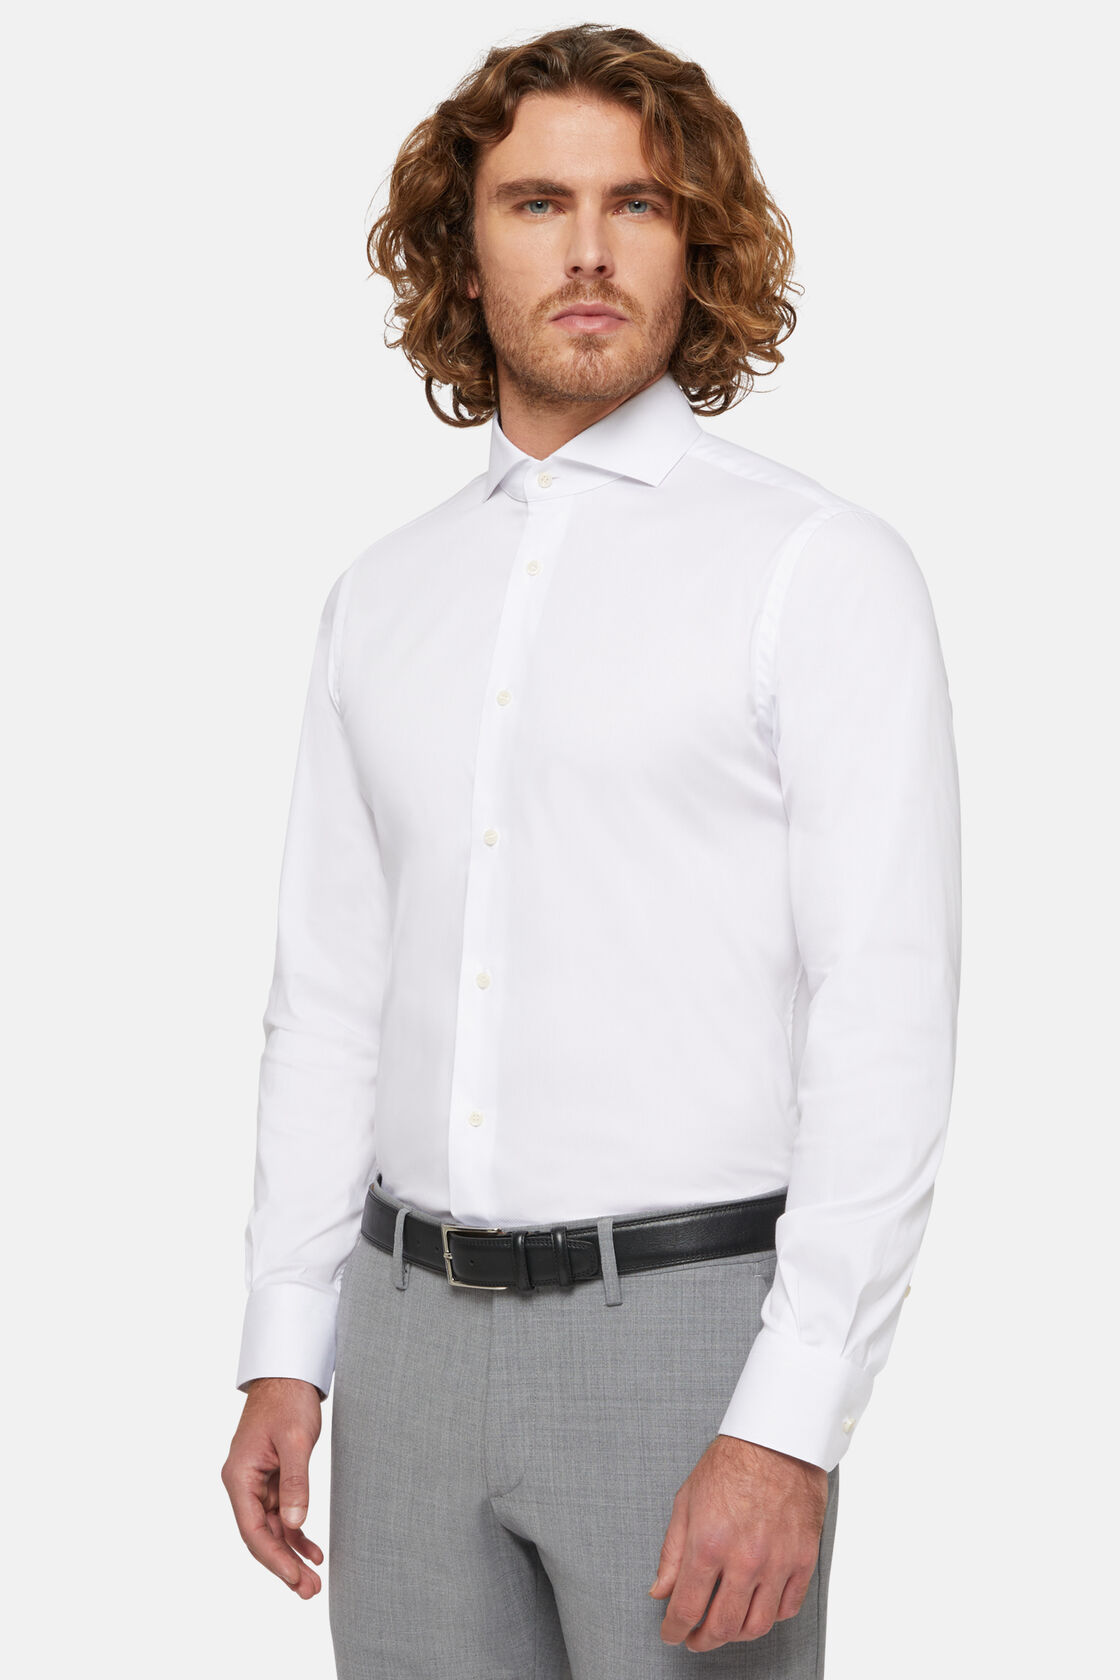 Biała koszula z elastycznej tkaniny bawełnianej z nylonem, fason wyszczuplony, White, hi-res